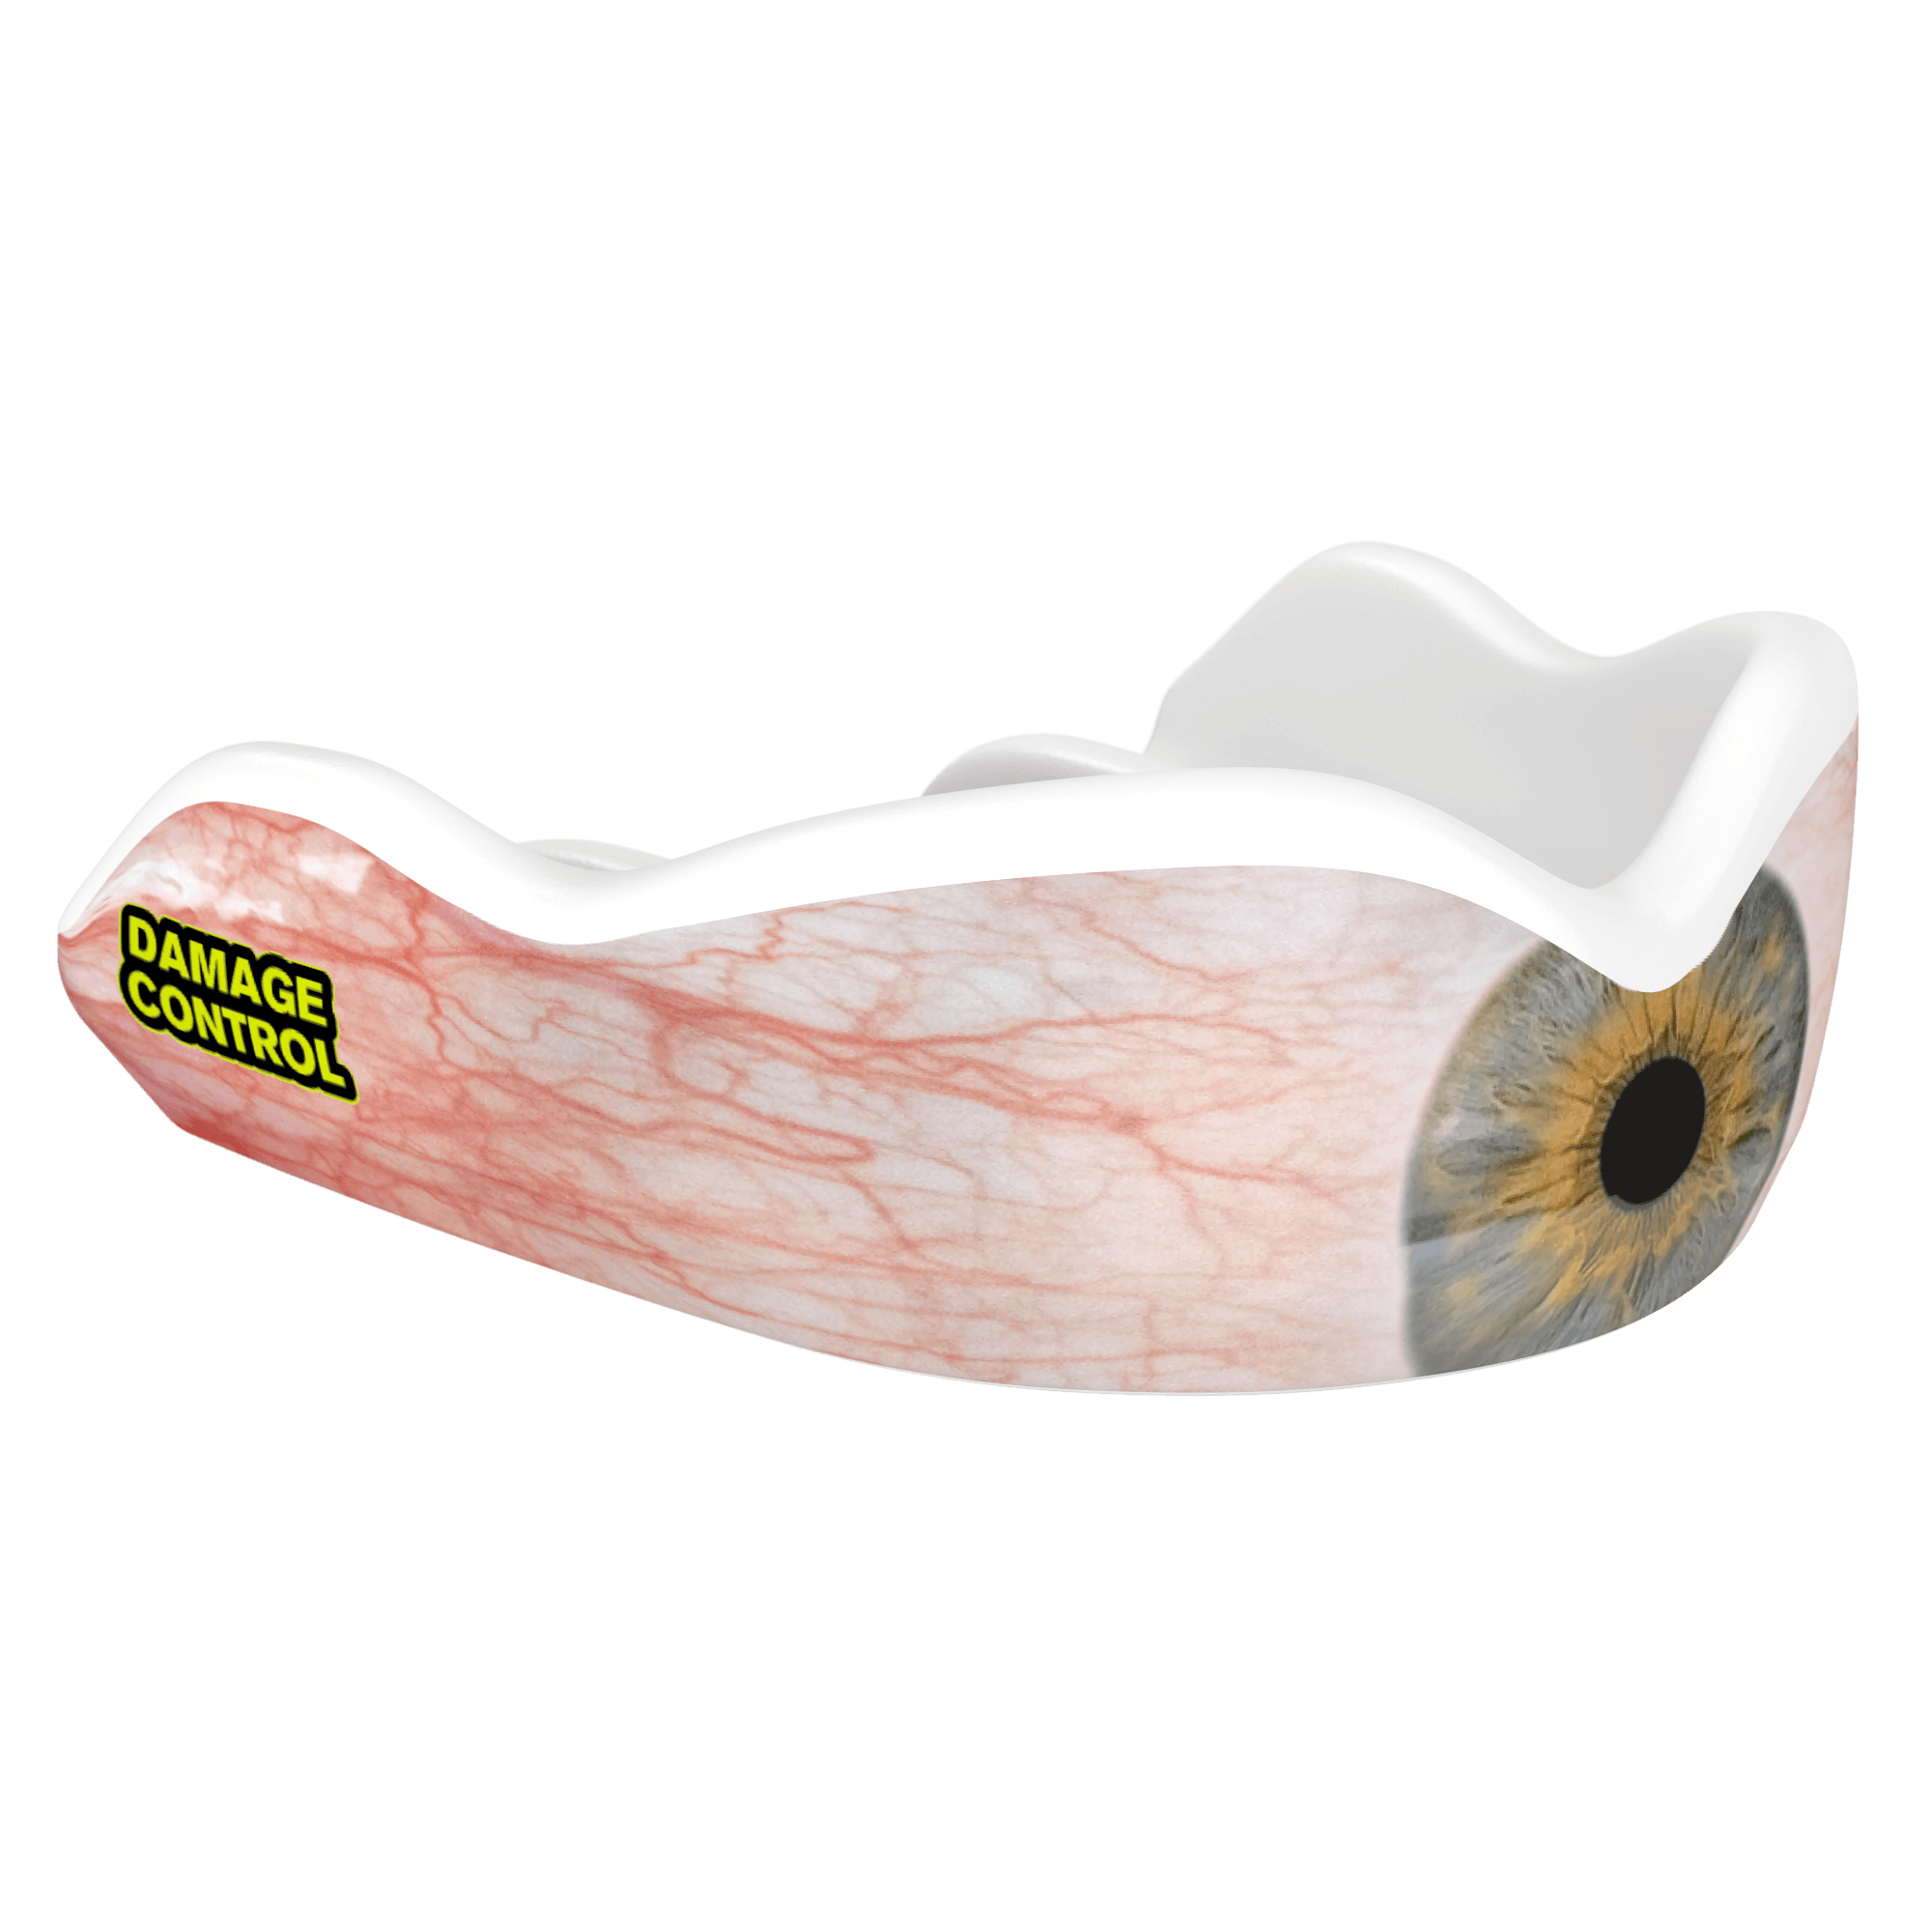 ICU Mouthguard (HI) - Damage Control Mouthguards